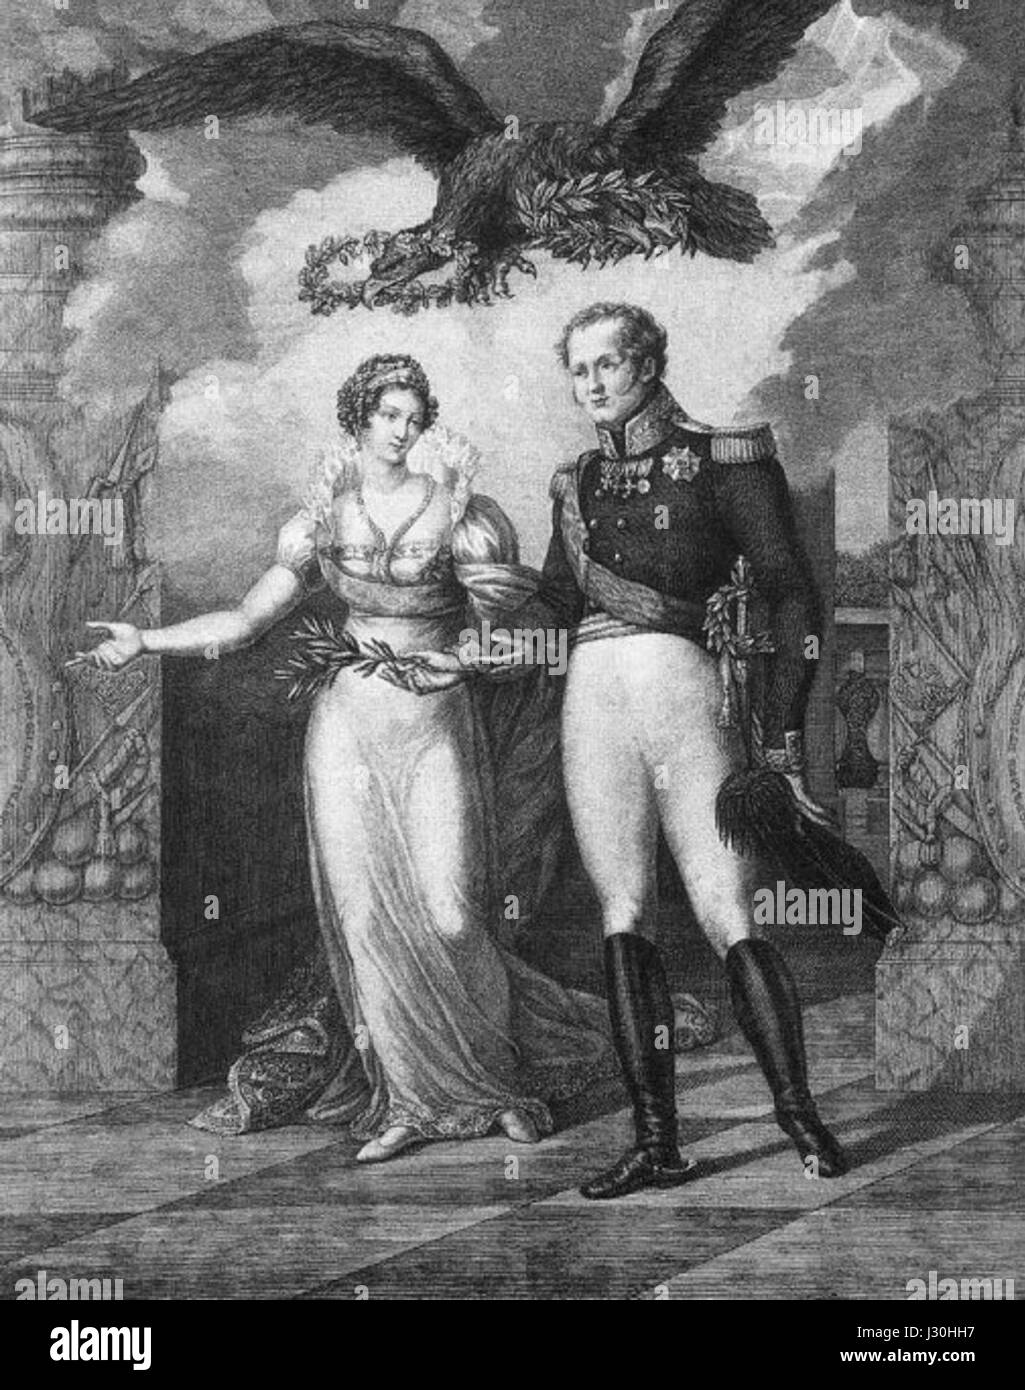 Alexandre I avec femme par Cardelli (1814) Banque D'Images